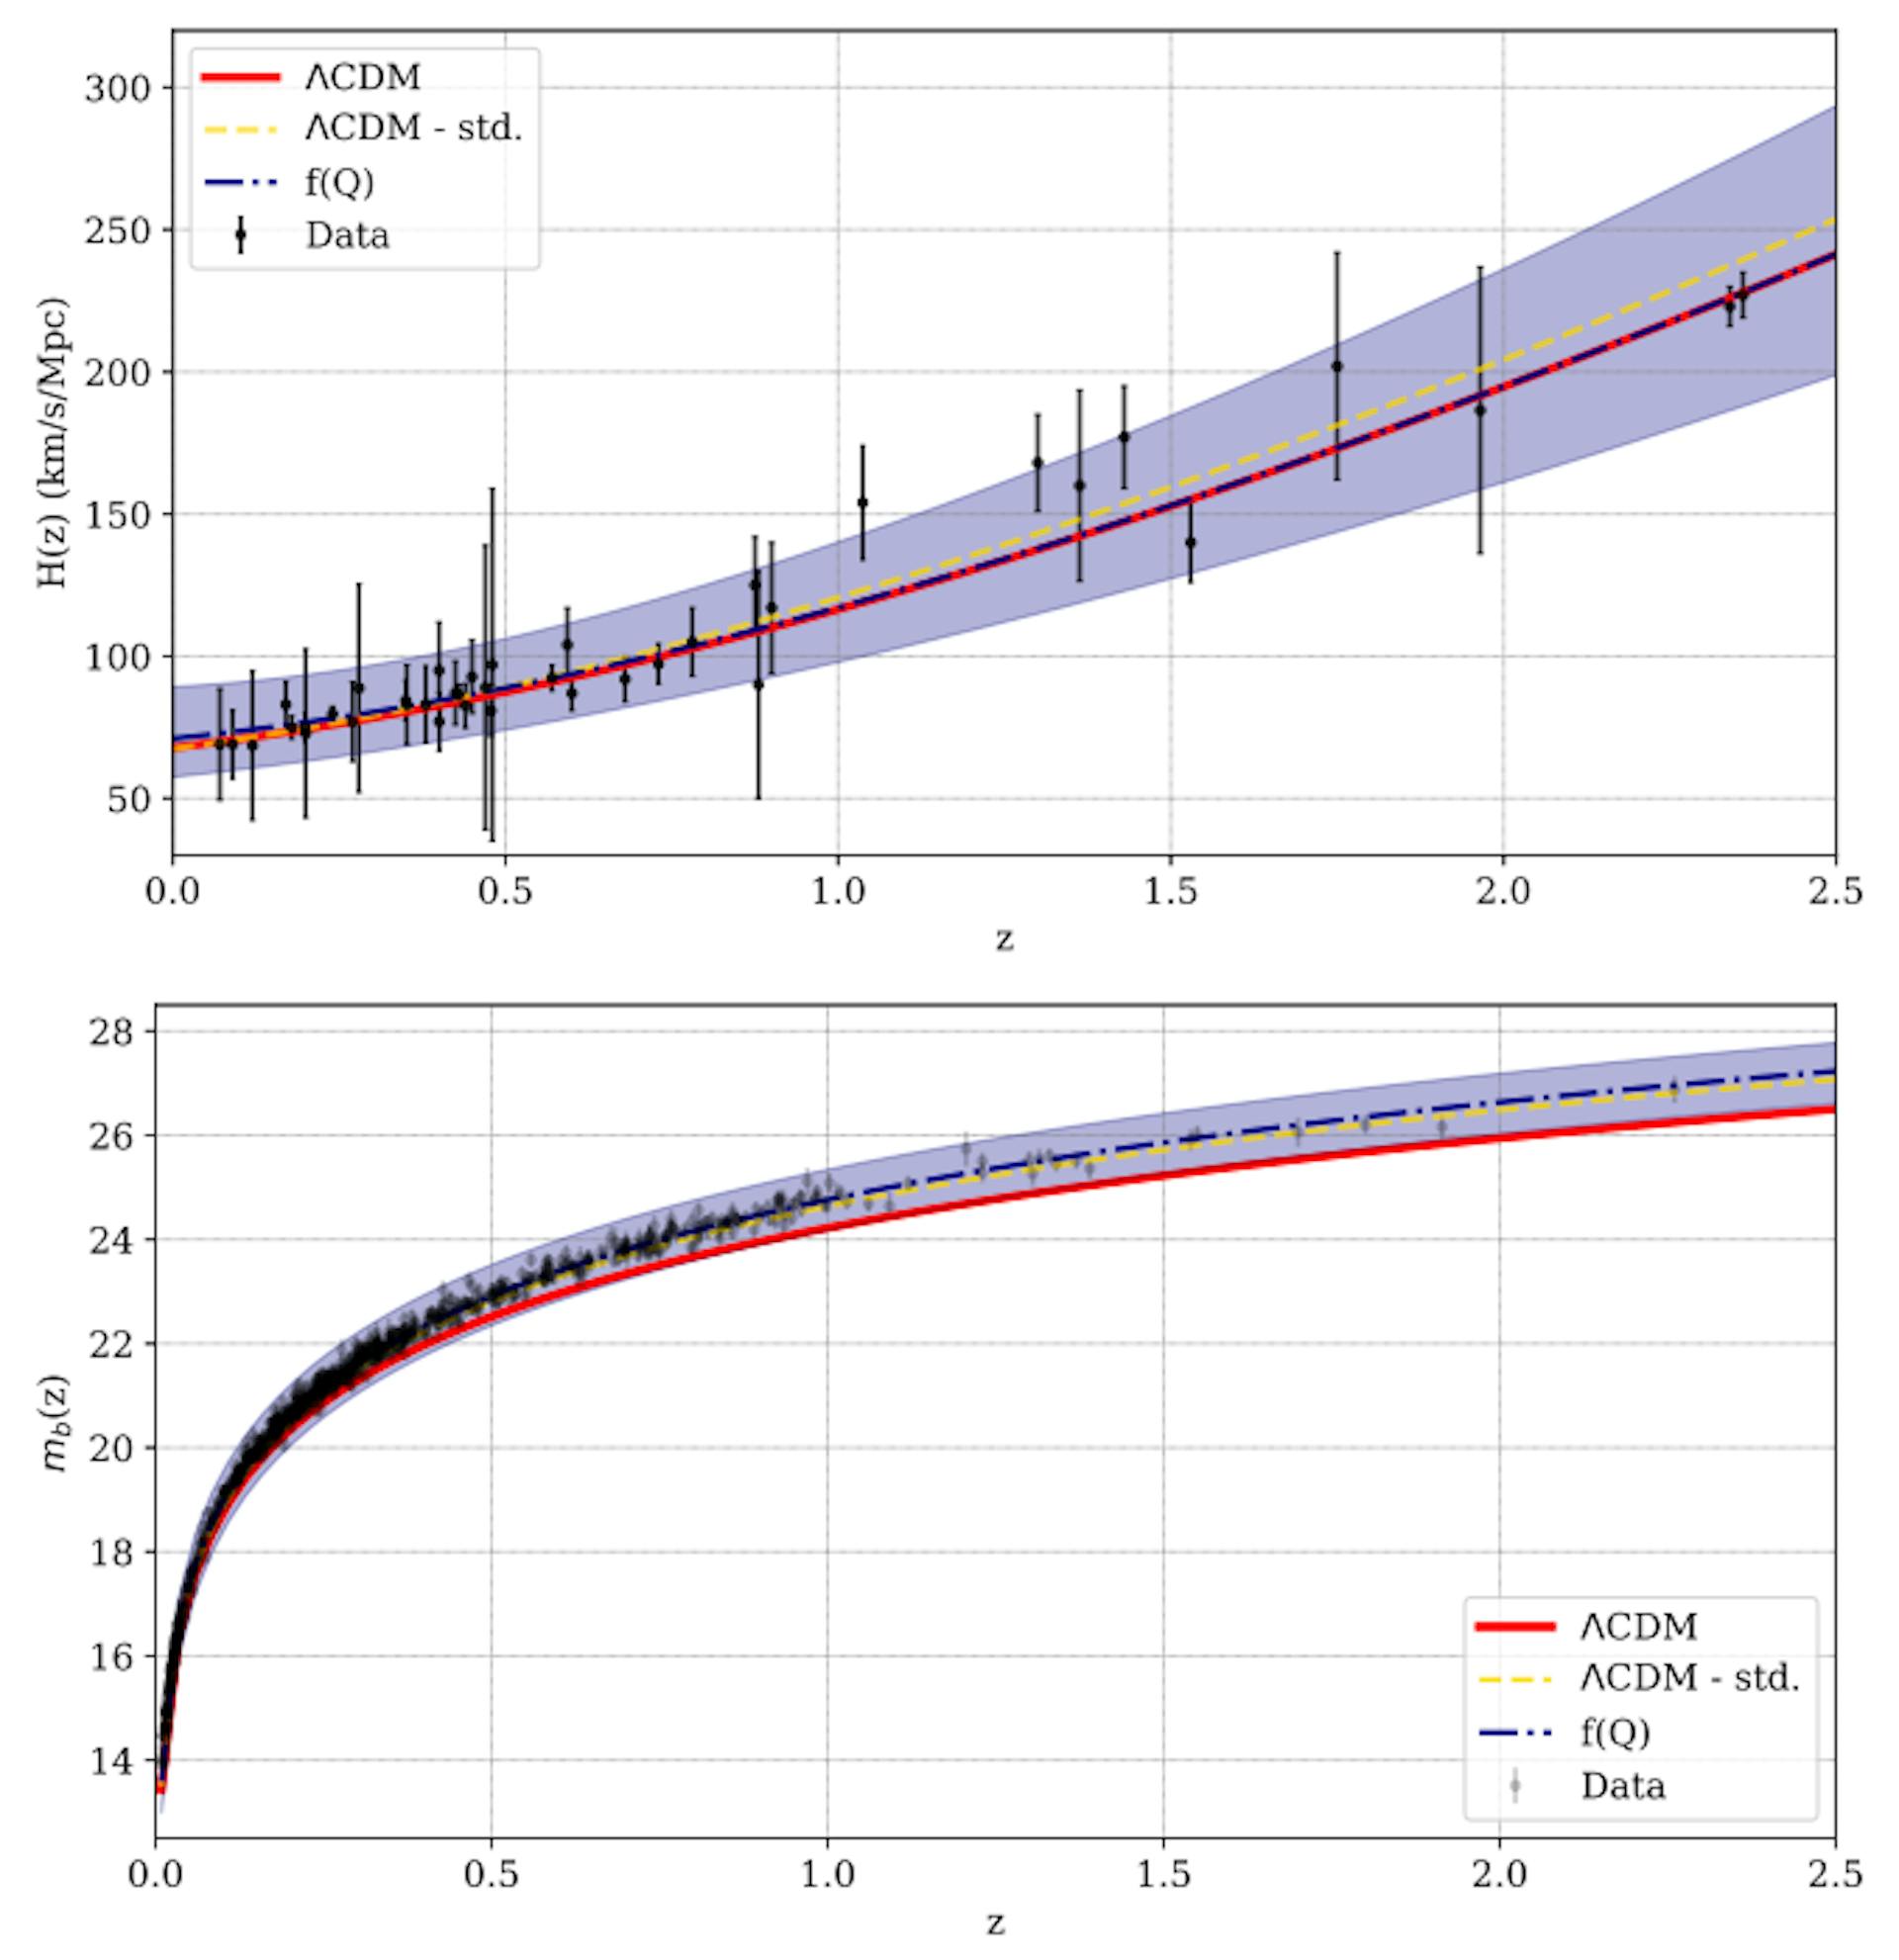 Şekil 6: Hubble parametresinin (üstte) ve SN büyüklüğünün (altta) kırmızıya kayma ile gelişimi, z, bu çalışmada sunulan f(Q) modeli için tahmin edildiği gibi (nokta çizgili mavi), gözlemsel verilerle (siyah) karşılaştırıldığında belirsizliği gösteren dikey çizgilere sahip noktalar). ΛCDM (tam kırmızı ve kesikli altın) modelinin öngördüğü evrim de metinde ayrıntılı olarak belirtildiği gibi karşılaştırma amacıyla gösterilmiştir.